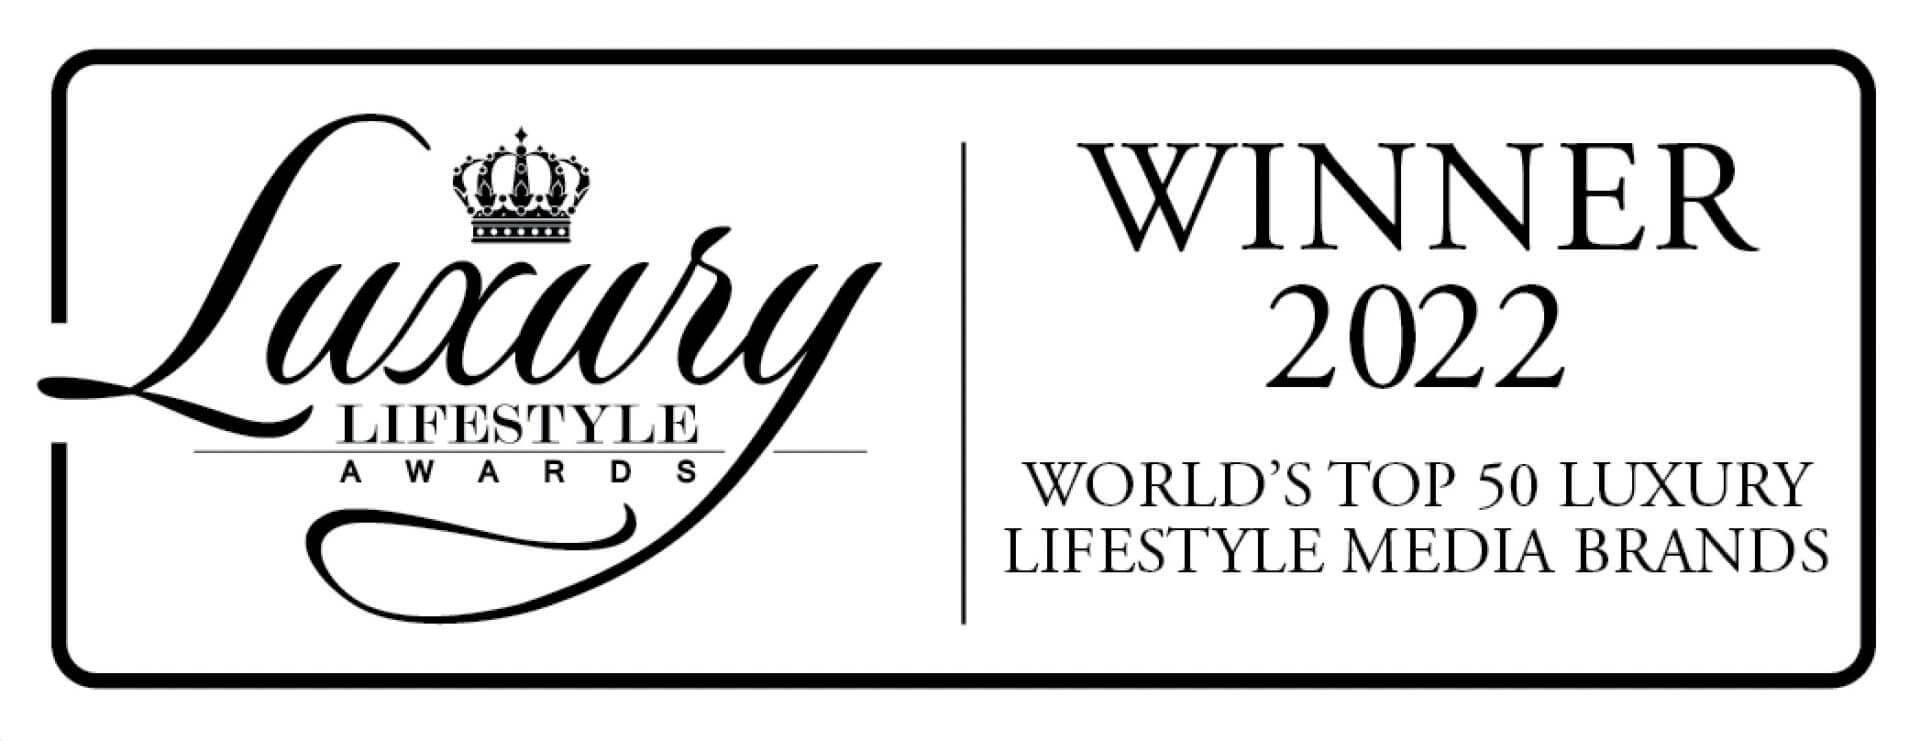 Радио luxury. Luxury Lifestyle Awards 2021. Luxury Lifestyle Association. Luxury & success Awards что это такое-. Люксури перевод.